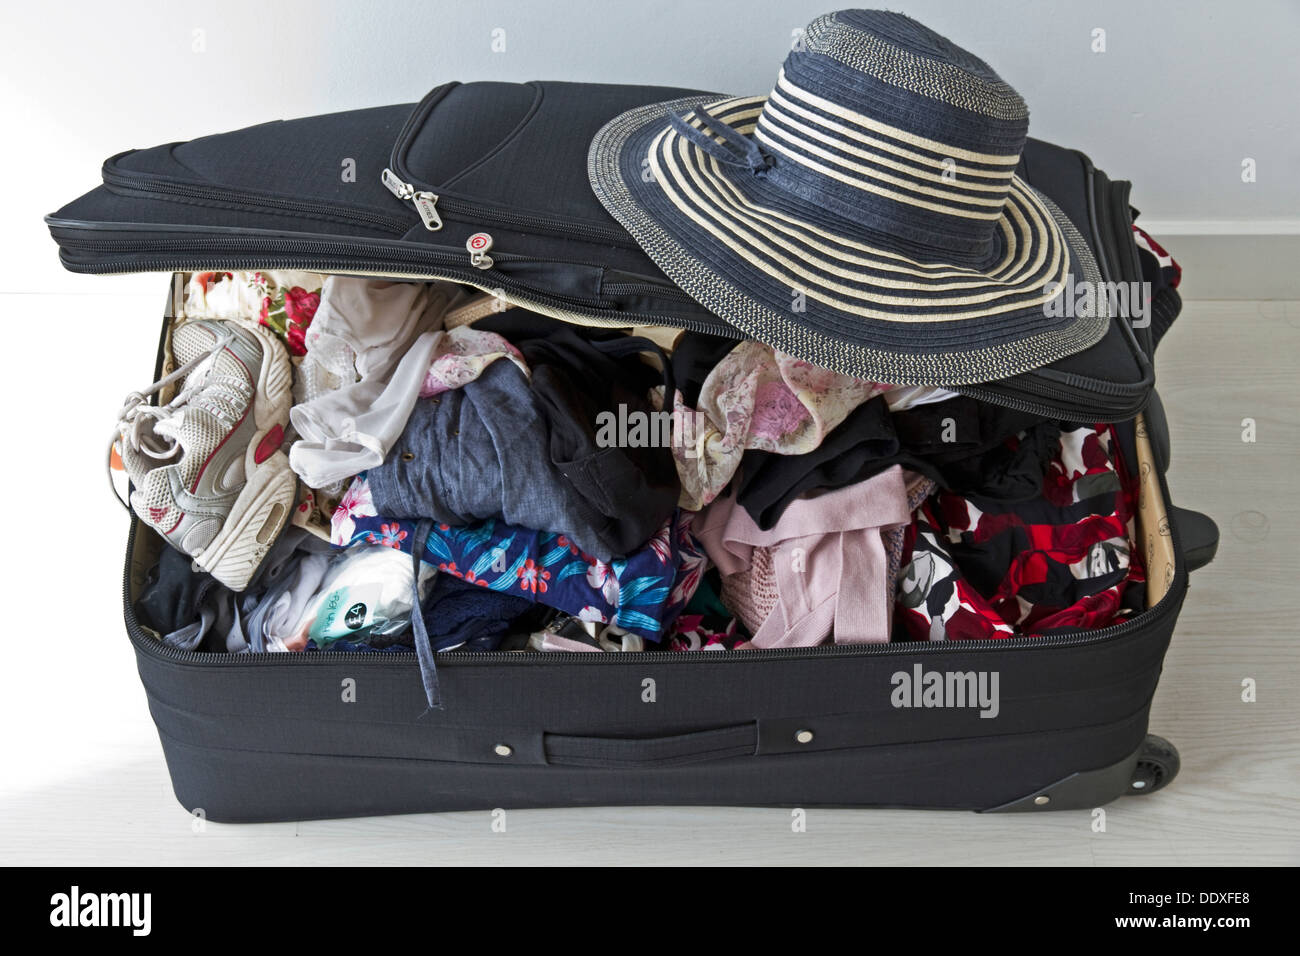 Holiday suitcase Stock Photo